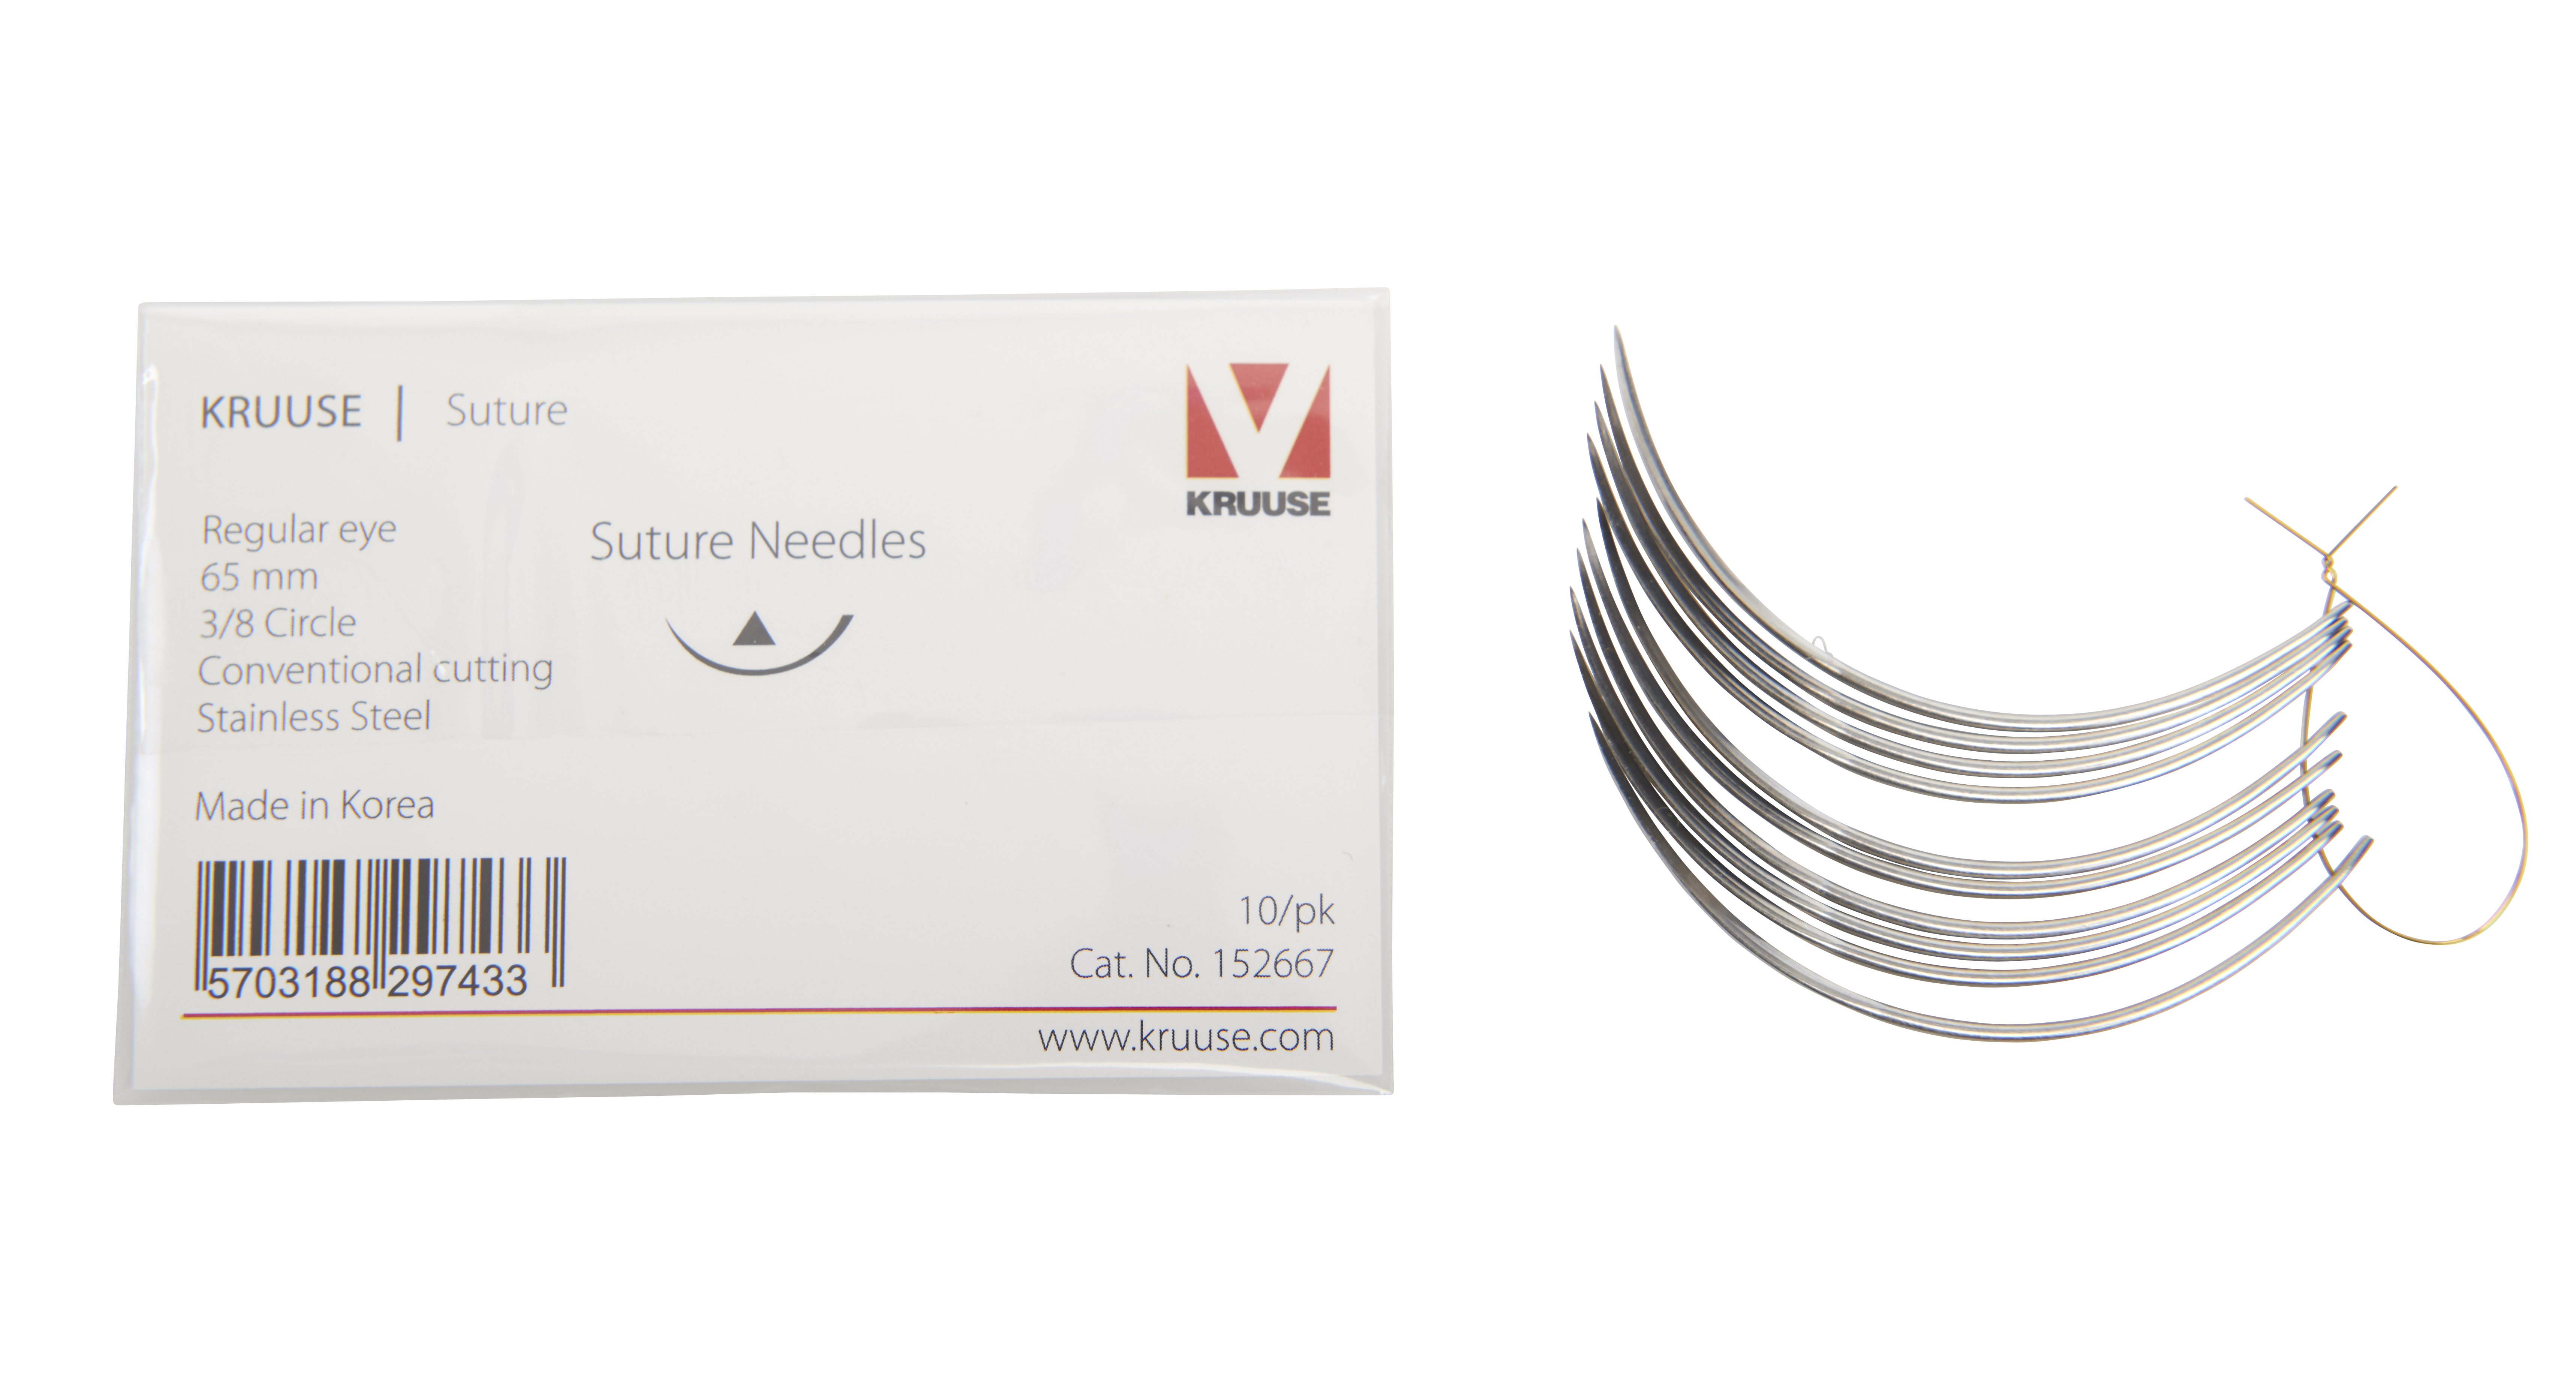 KRUUSE Suture Needle, regular eye, 3/8 circle, conventional cutting, 65 mm, 10/pk